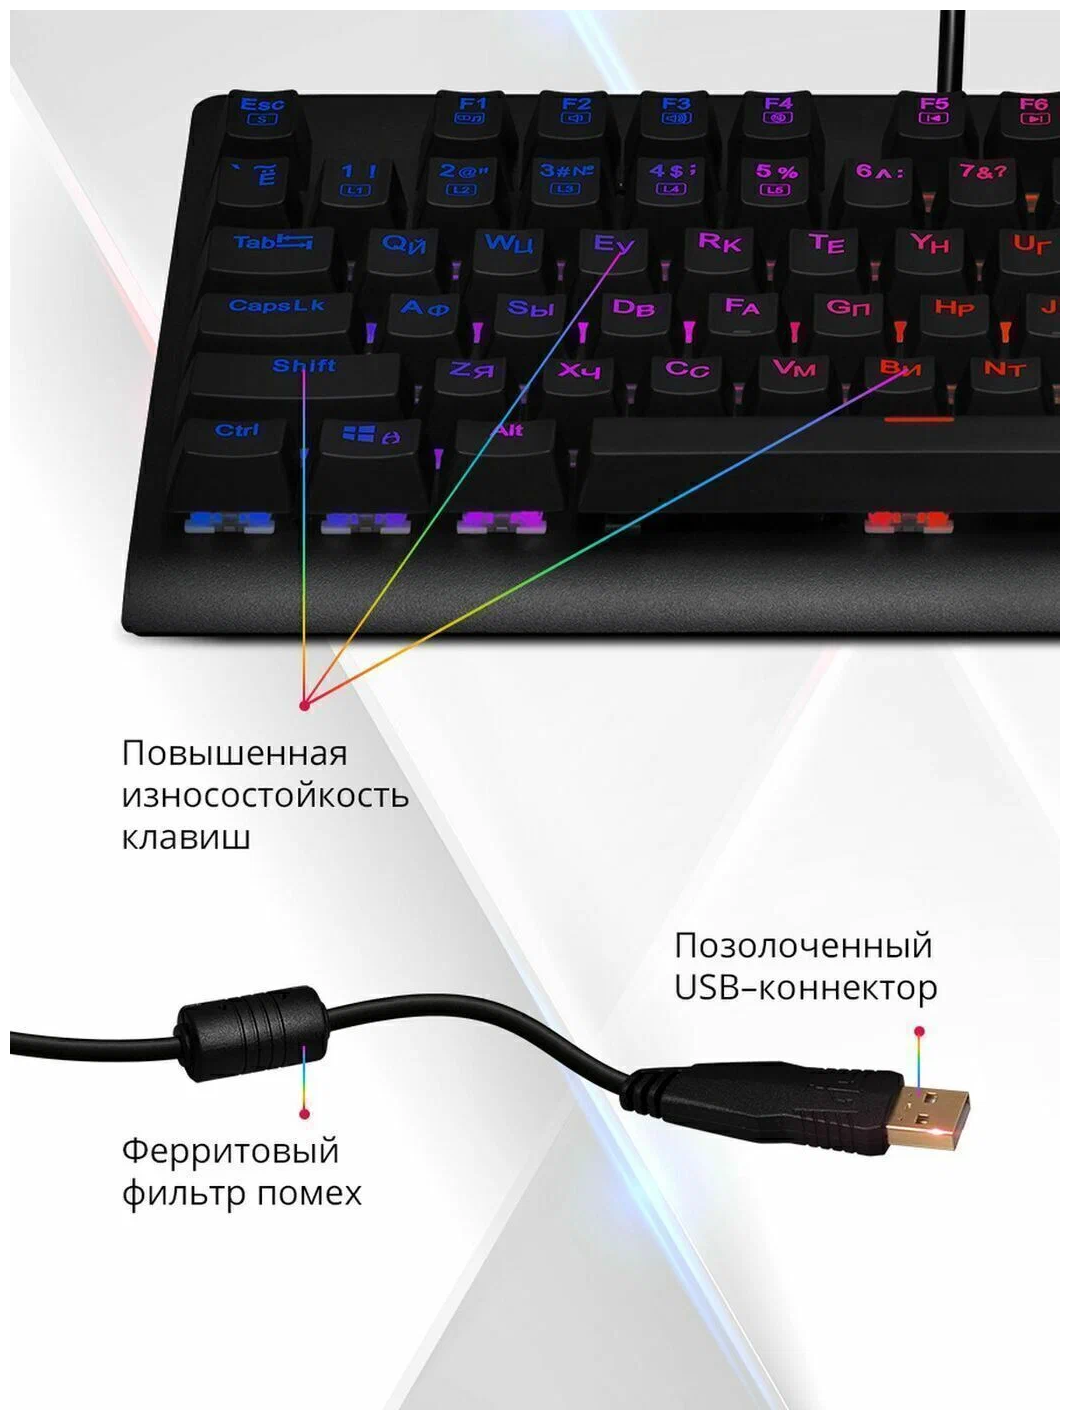 Механическая игровая клавиатура Redragon Dark Avenger RU, RGB подсветка, компактная